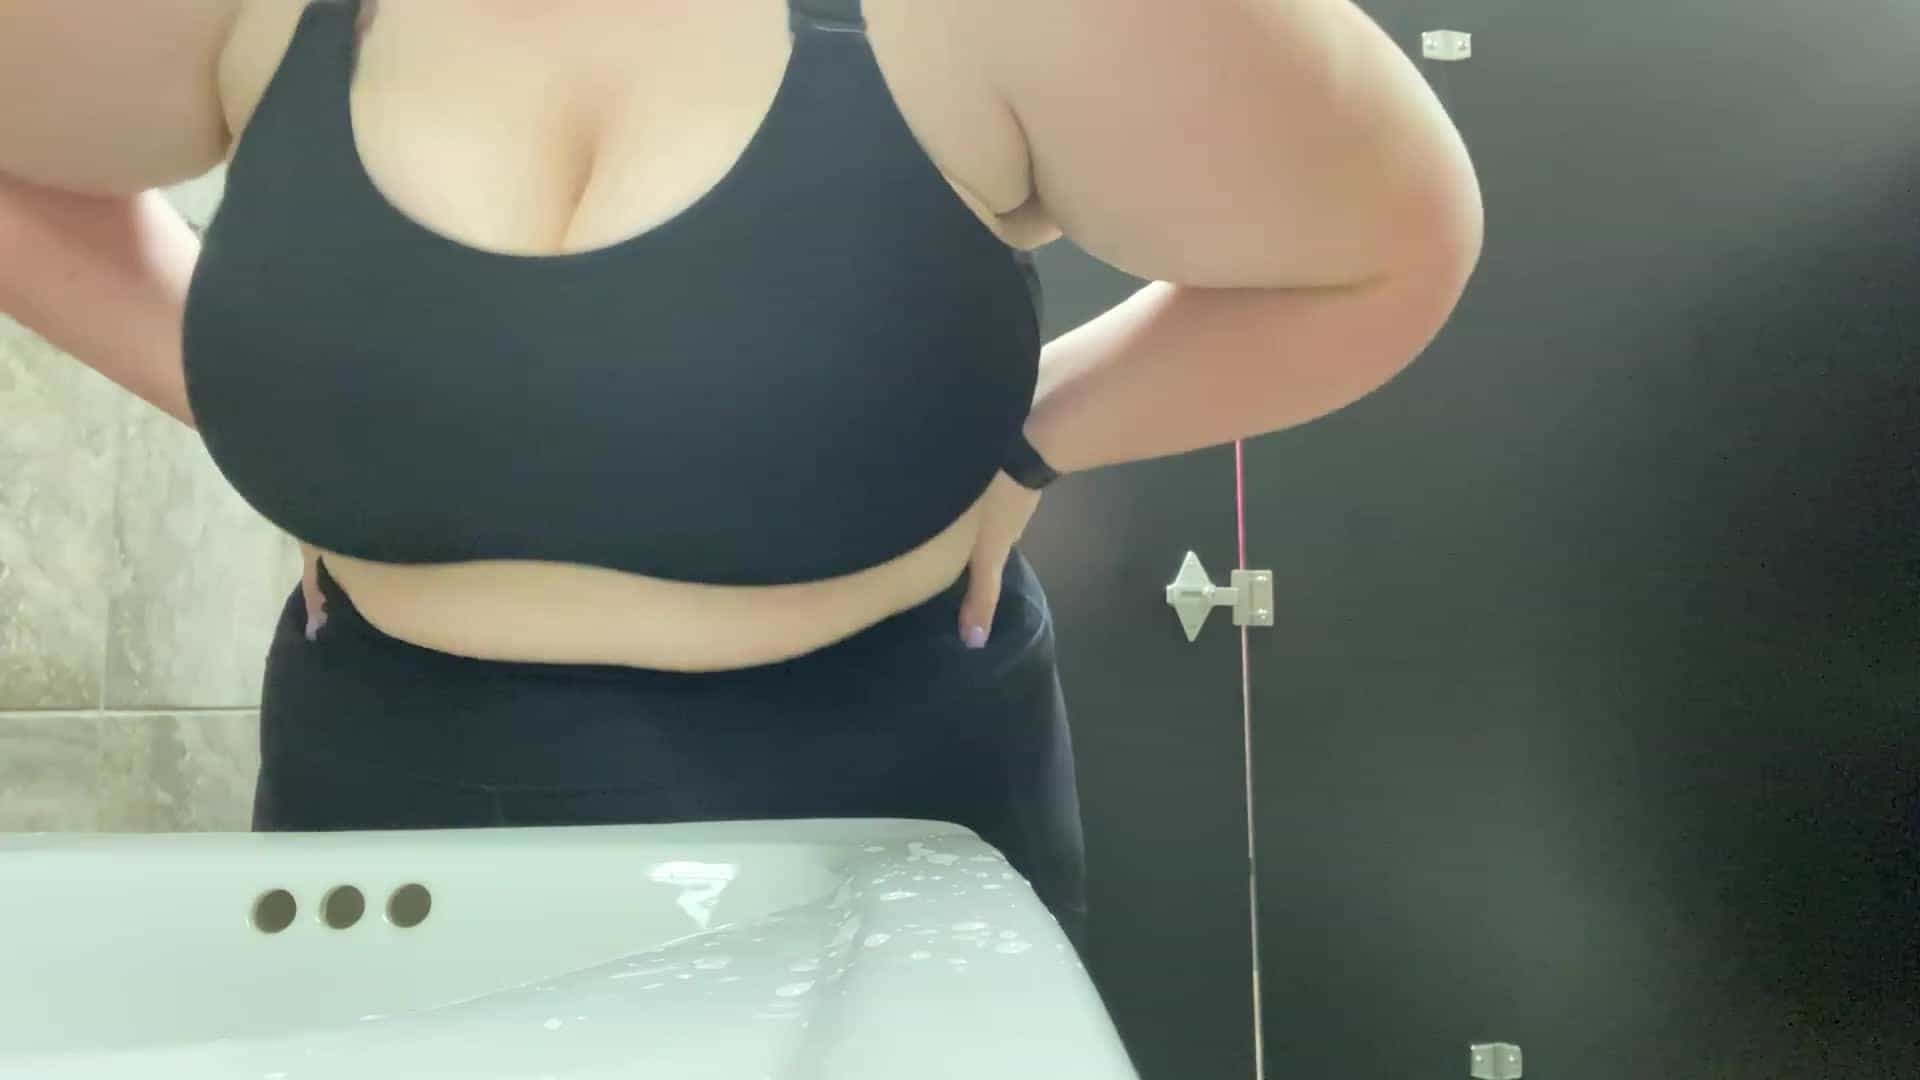 Titty Drop in gym bathroom